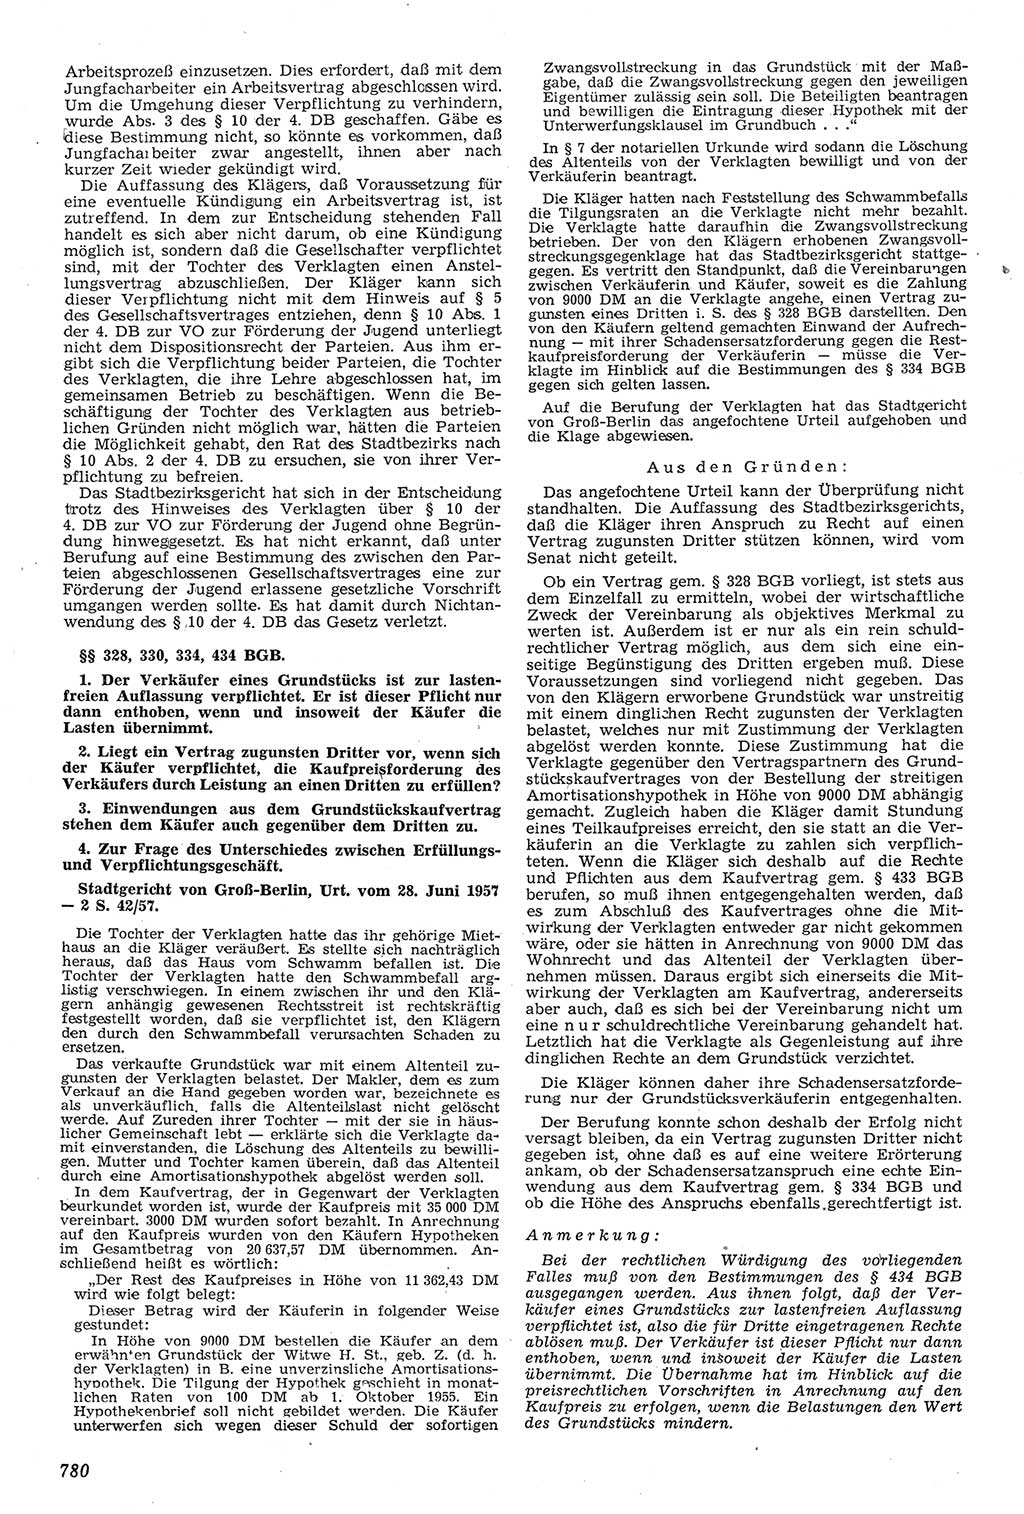 Neue Justiz (NJ), Zeitschrift für Recht und Rechtswissenschaft [Deutsche Demokratische Republik (DDR)], 11. Jahrgang 1957, Seite 780 (NJ DDR 1957, S. 780)